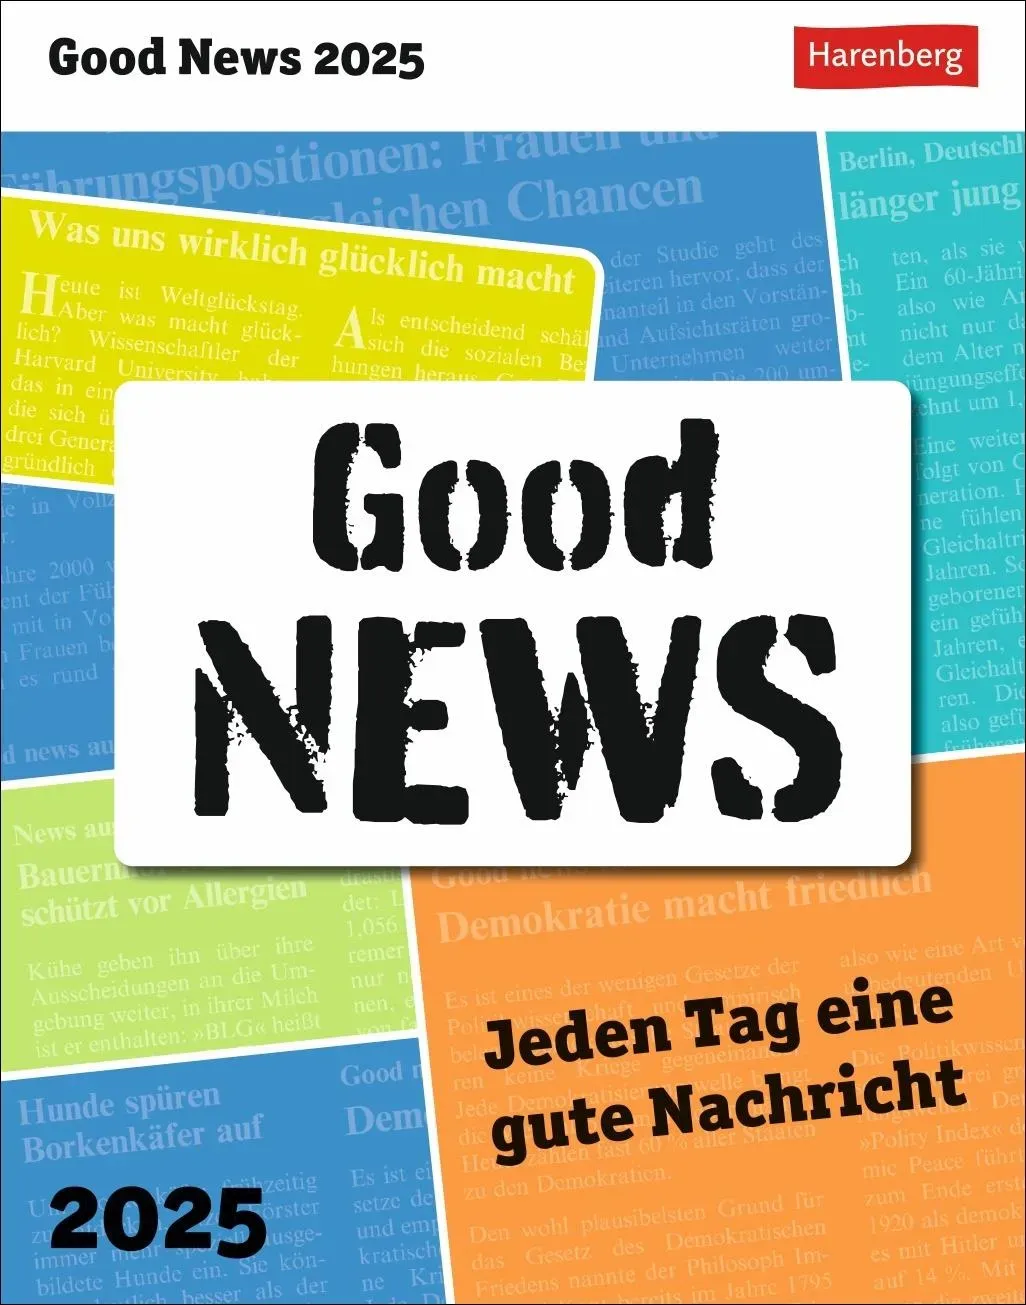 Harenberg, Kalender, Good News Tagesabreißkalender 2025 - Jeden Tag eine gute Nachricht (11 x 14 cm, Deutsch)